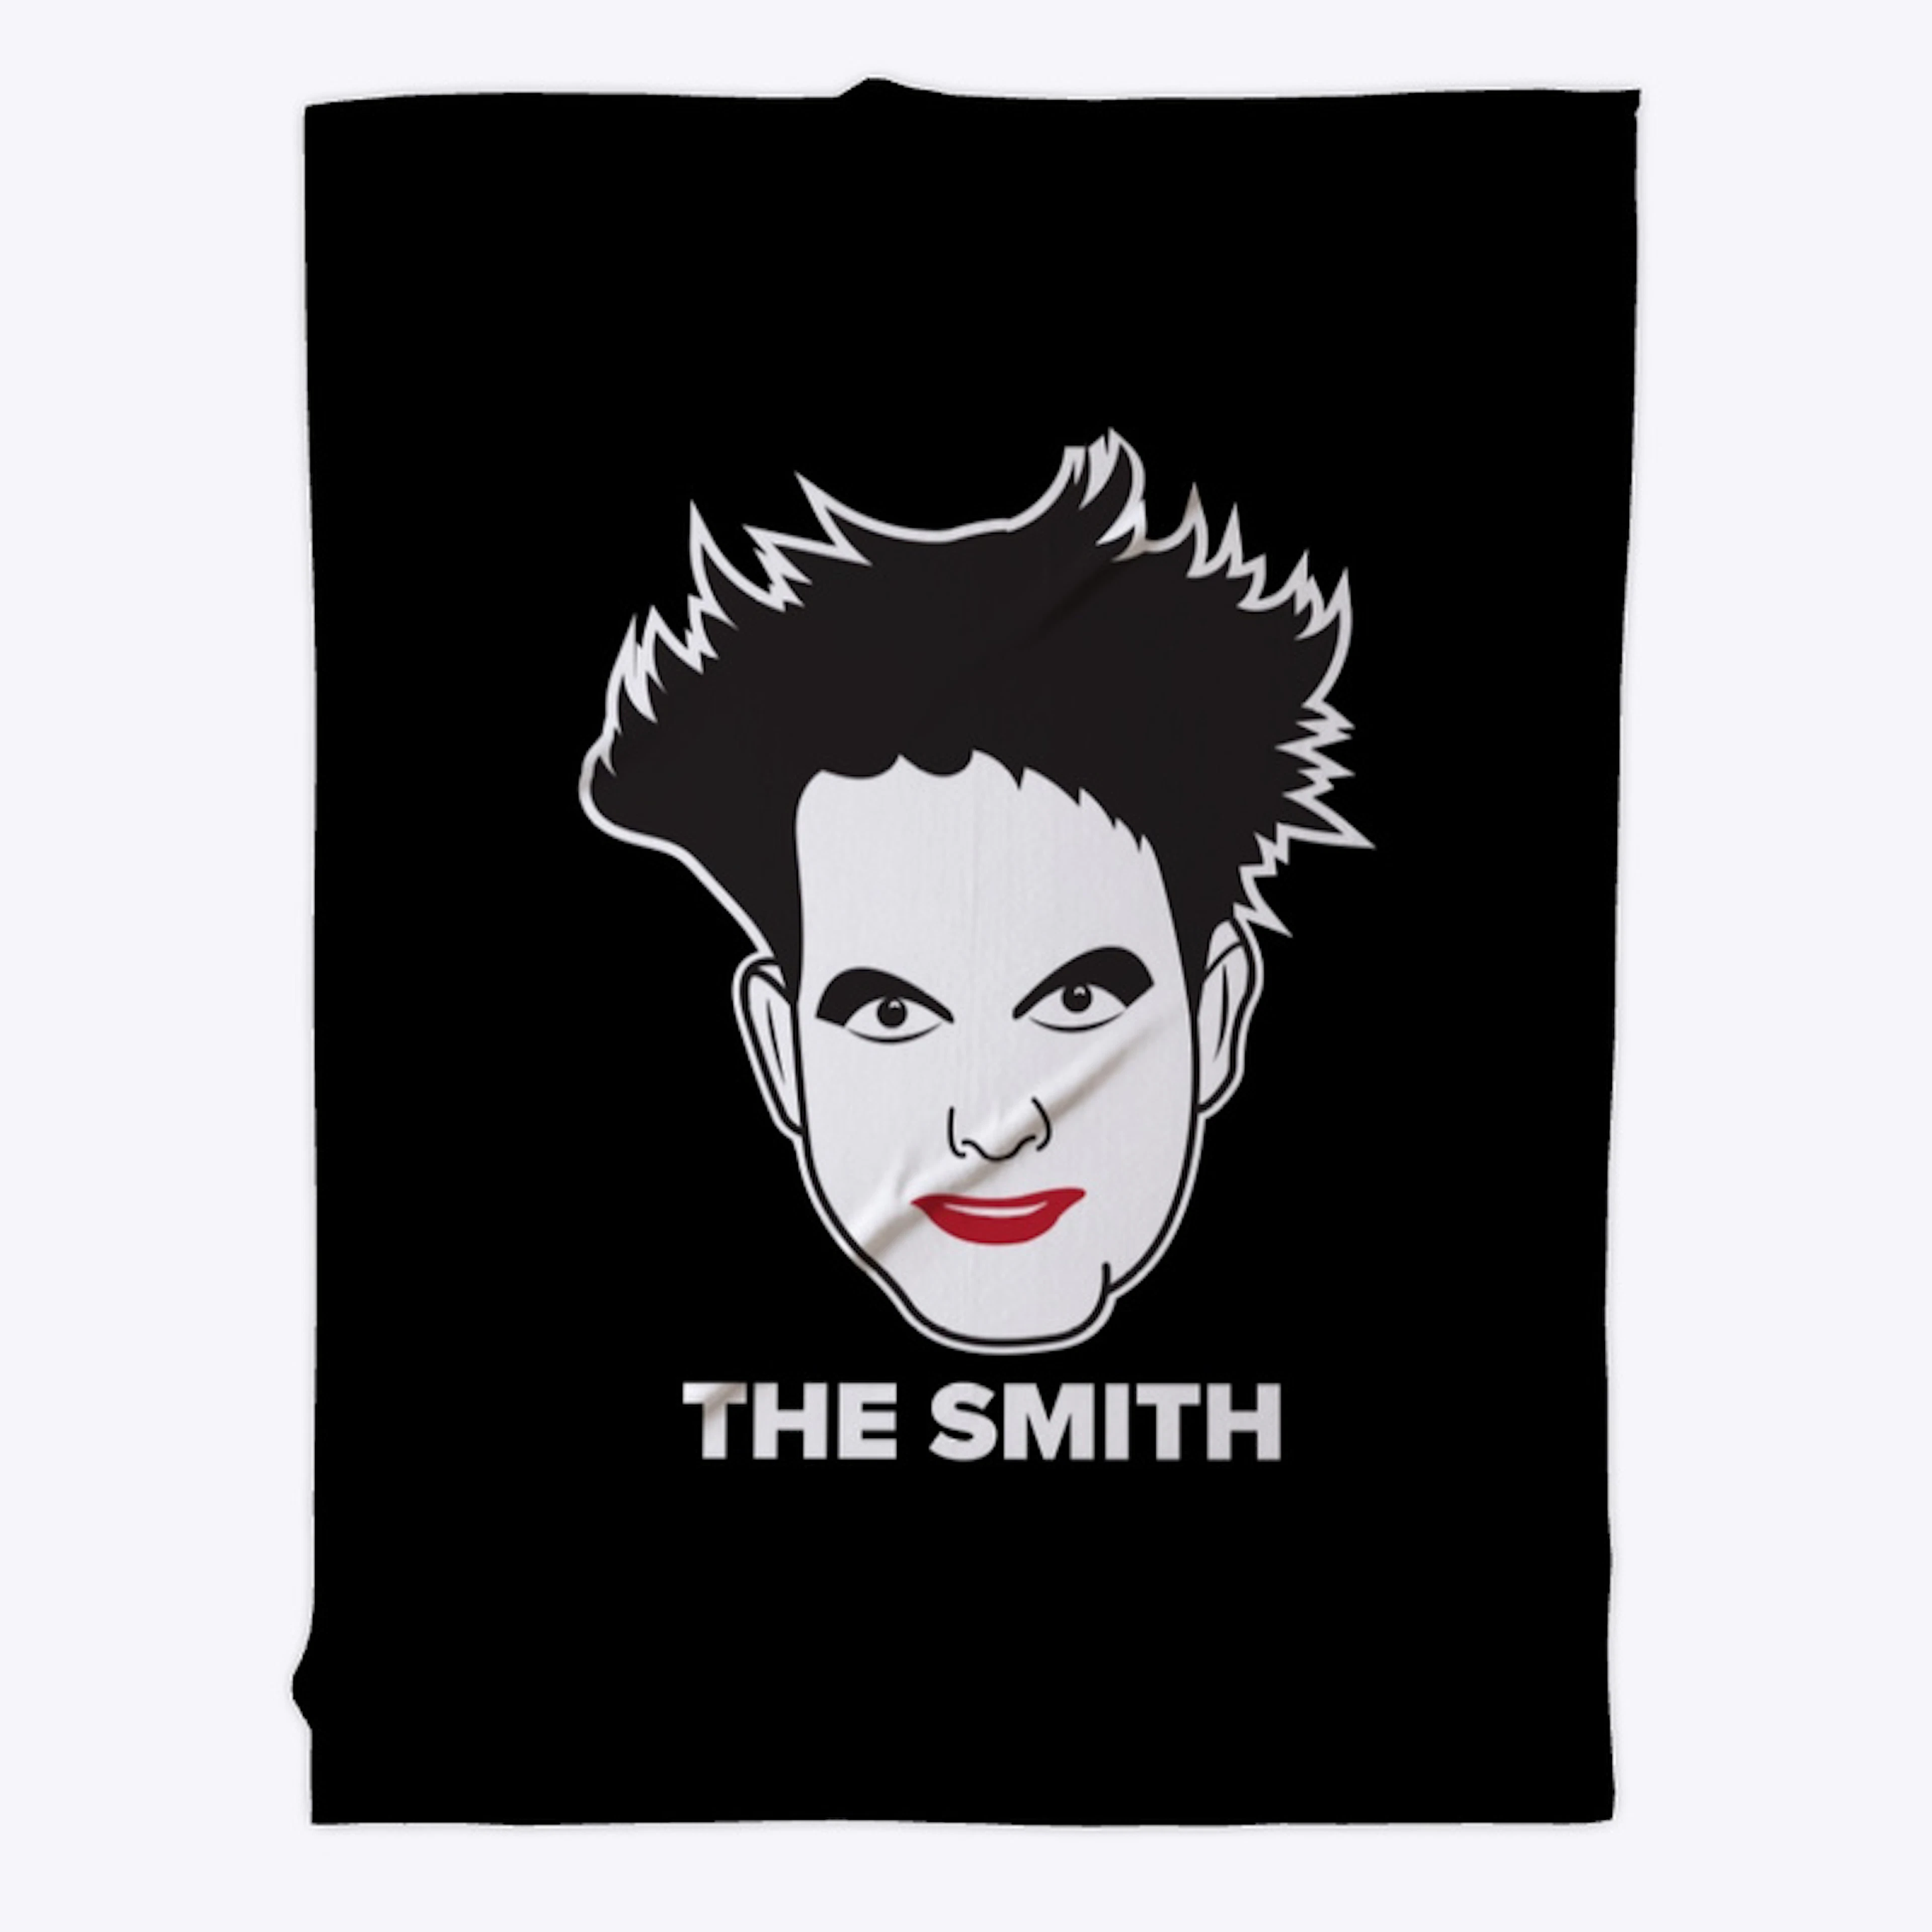 "The" Smith